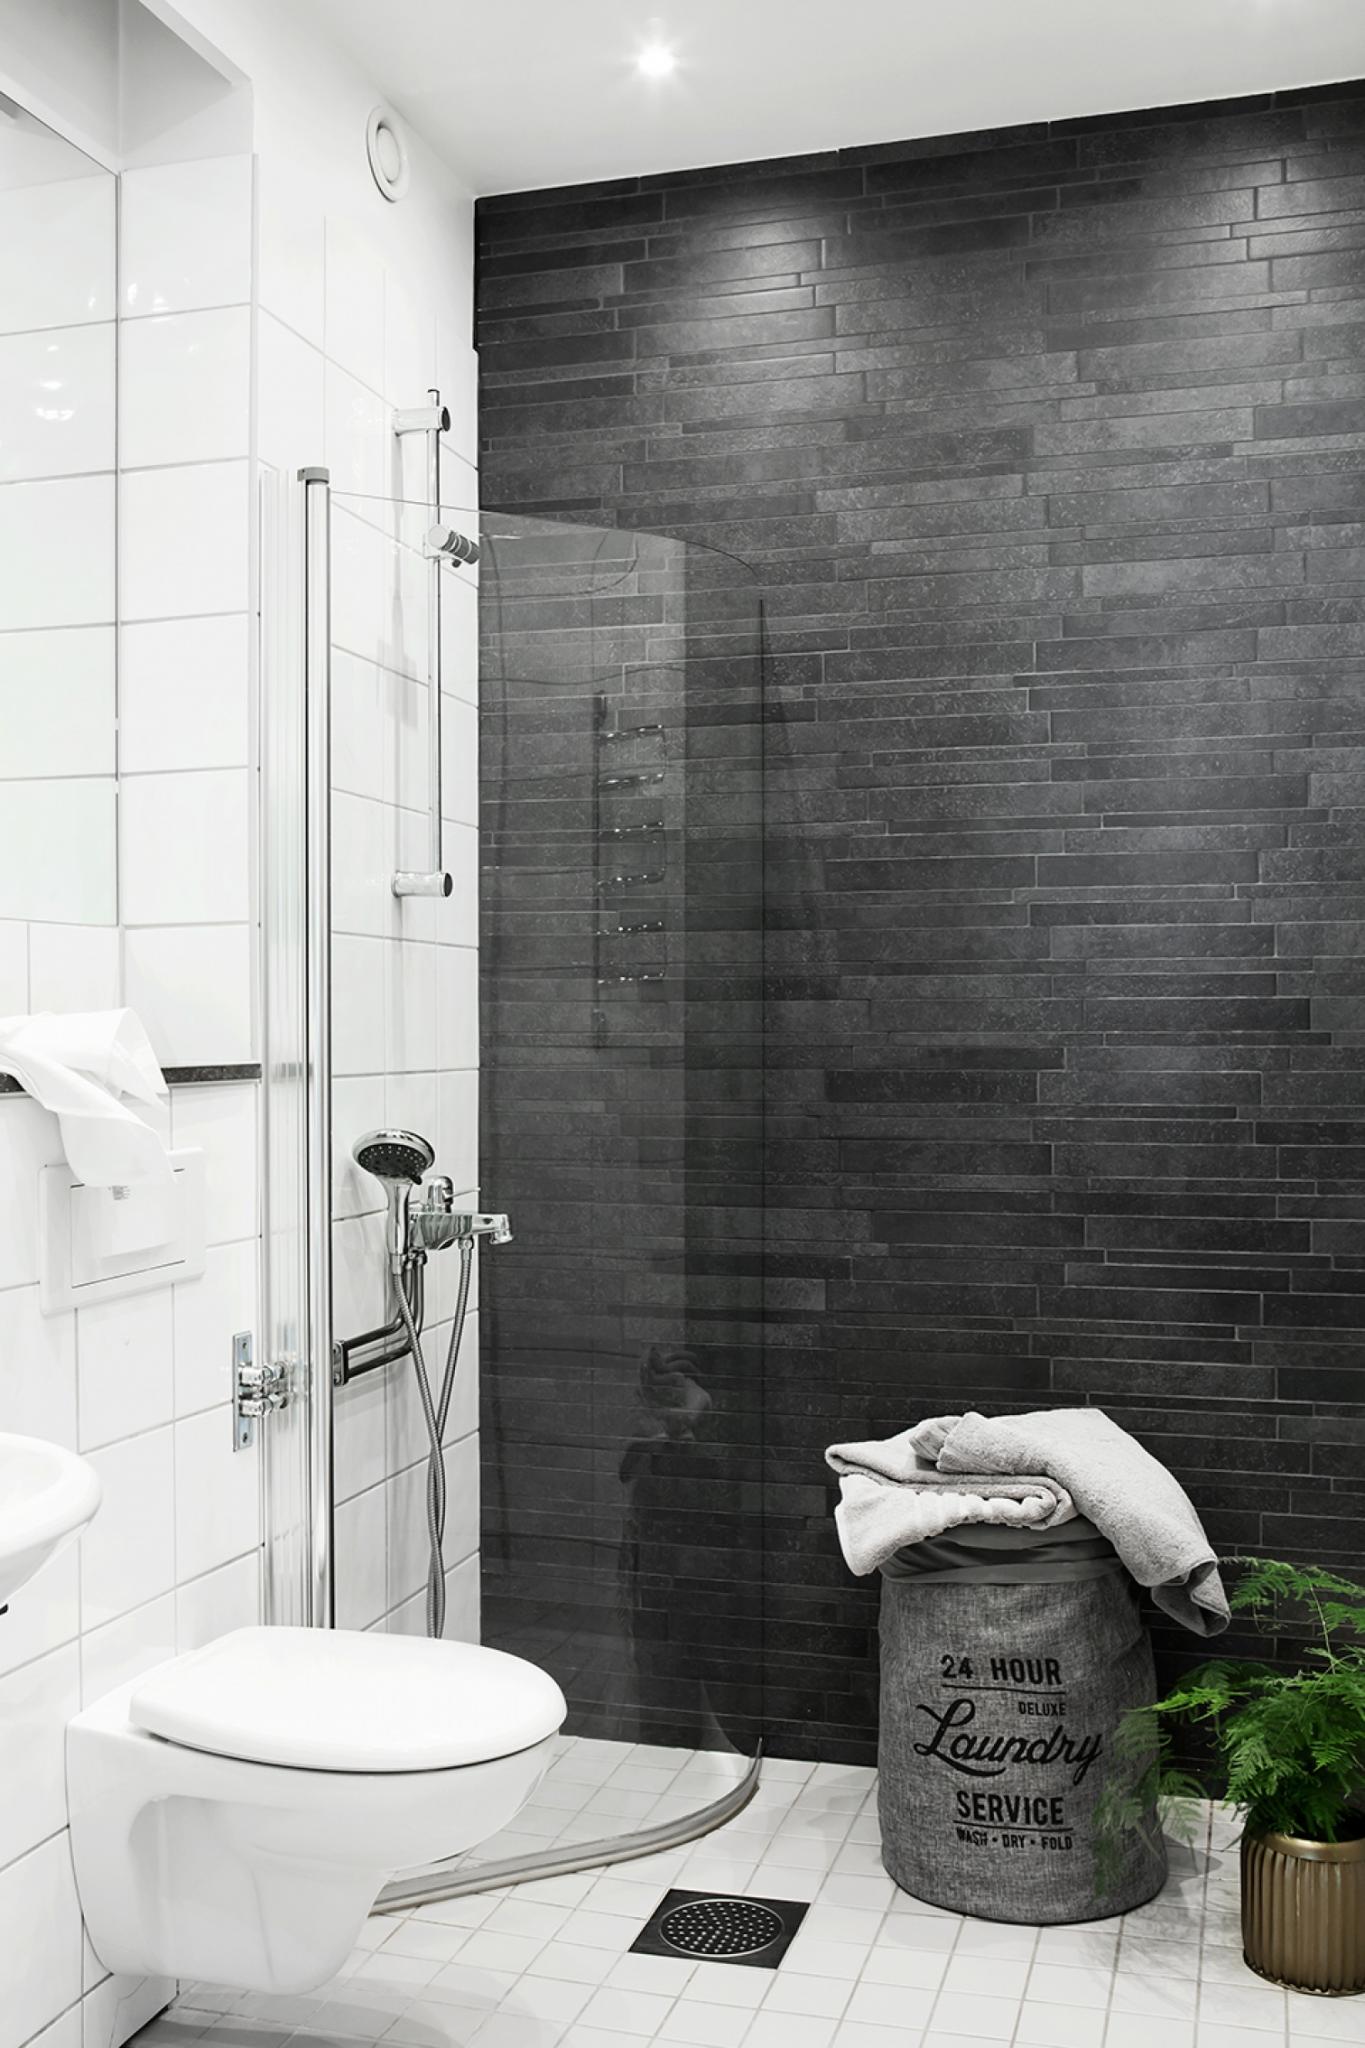 Badezimmer in Grau klein Duschkabine Wäschekorb kleine Räume einrichten Ideen